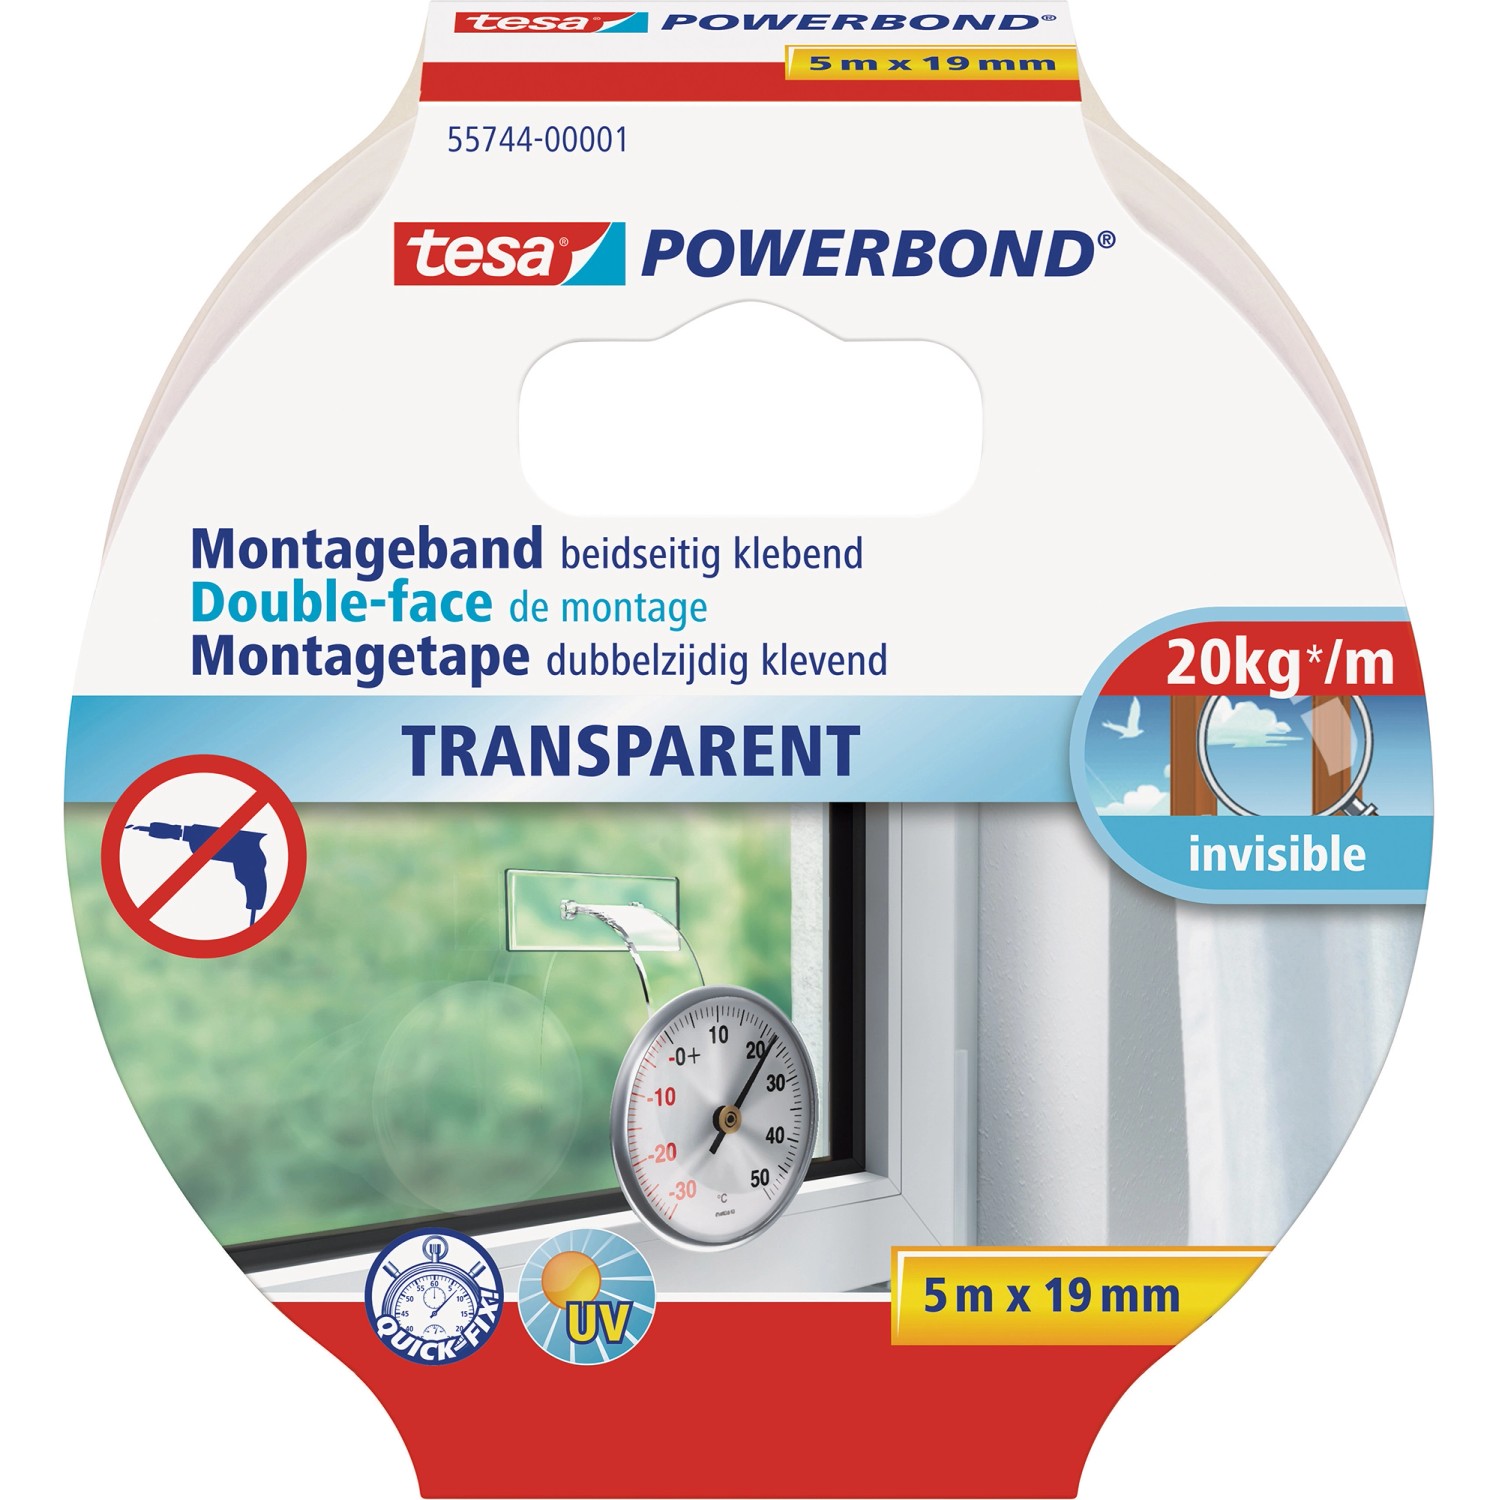 Tesa Powerbond Montageband Transparent 5 m x 19 mm